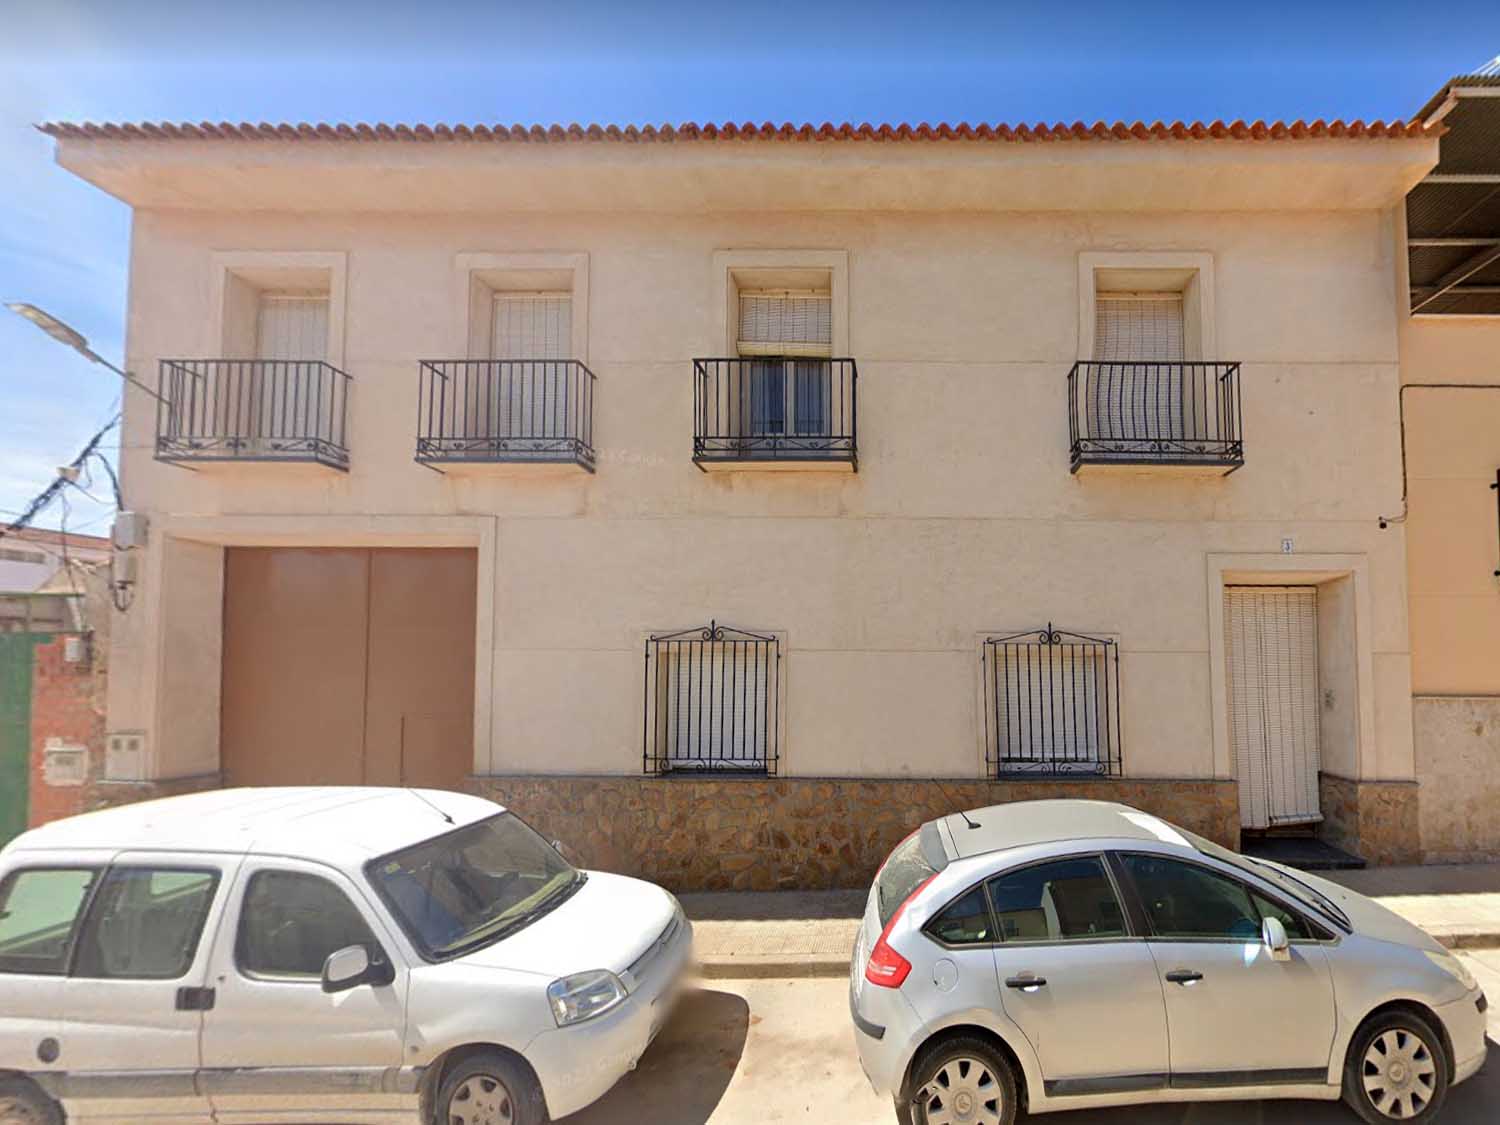 Mitad indivisa (50%) del solar con Casa en Calle García Lorca de Campo de Criptana (Ciudad Real). FR 34557 RP Alcázar de san Juan Nº 2.